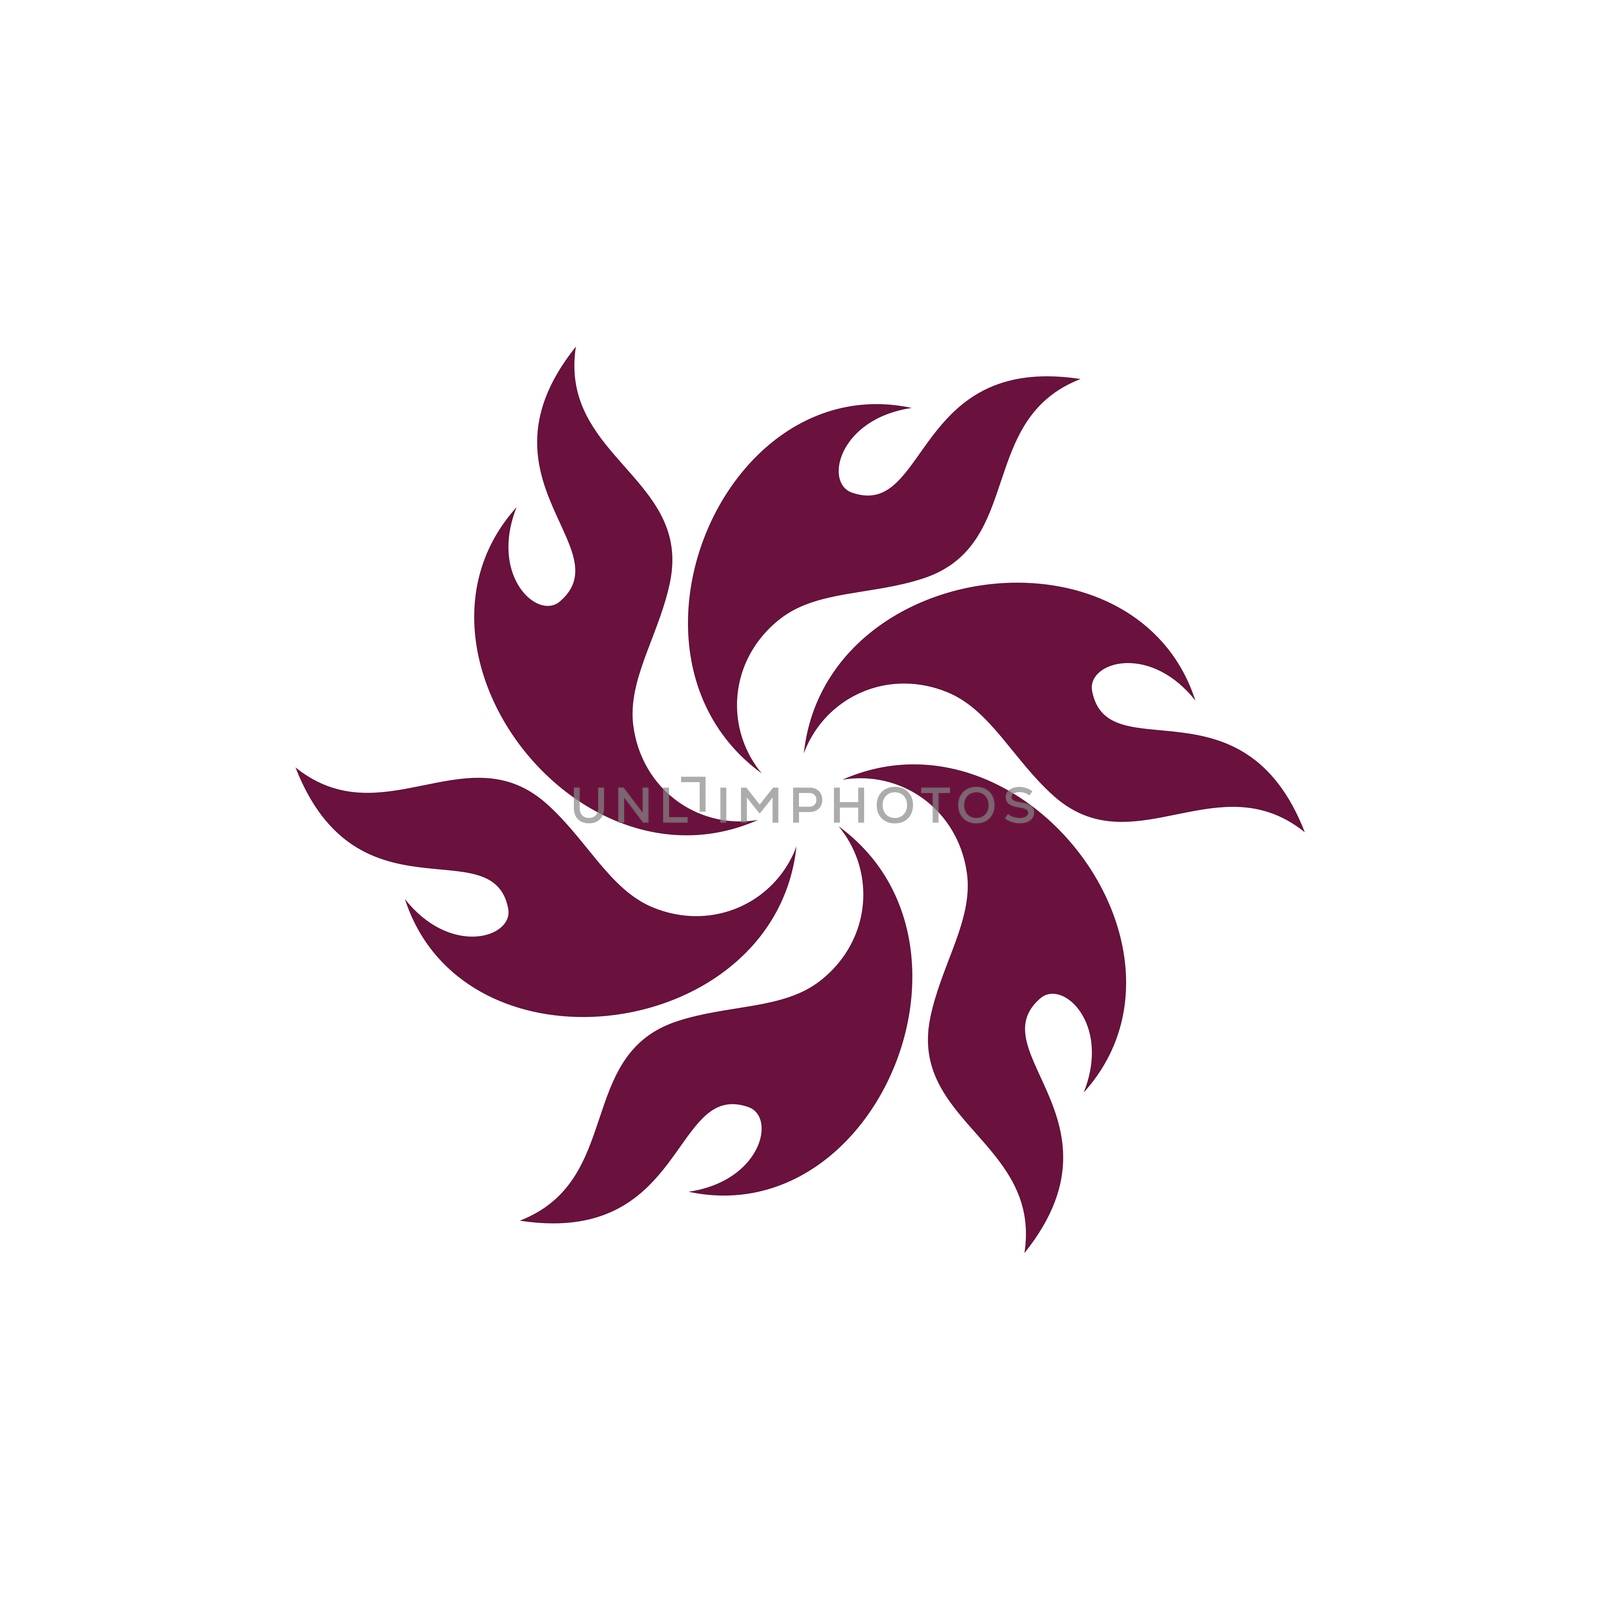 Burgundy Color Flame Flower Logo Template Illustration Design. Vector EPS 10.